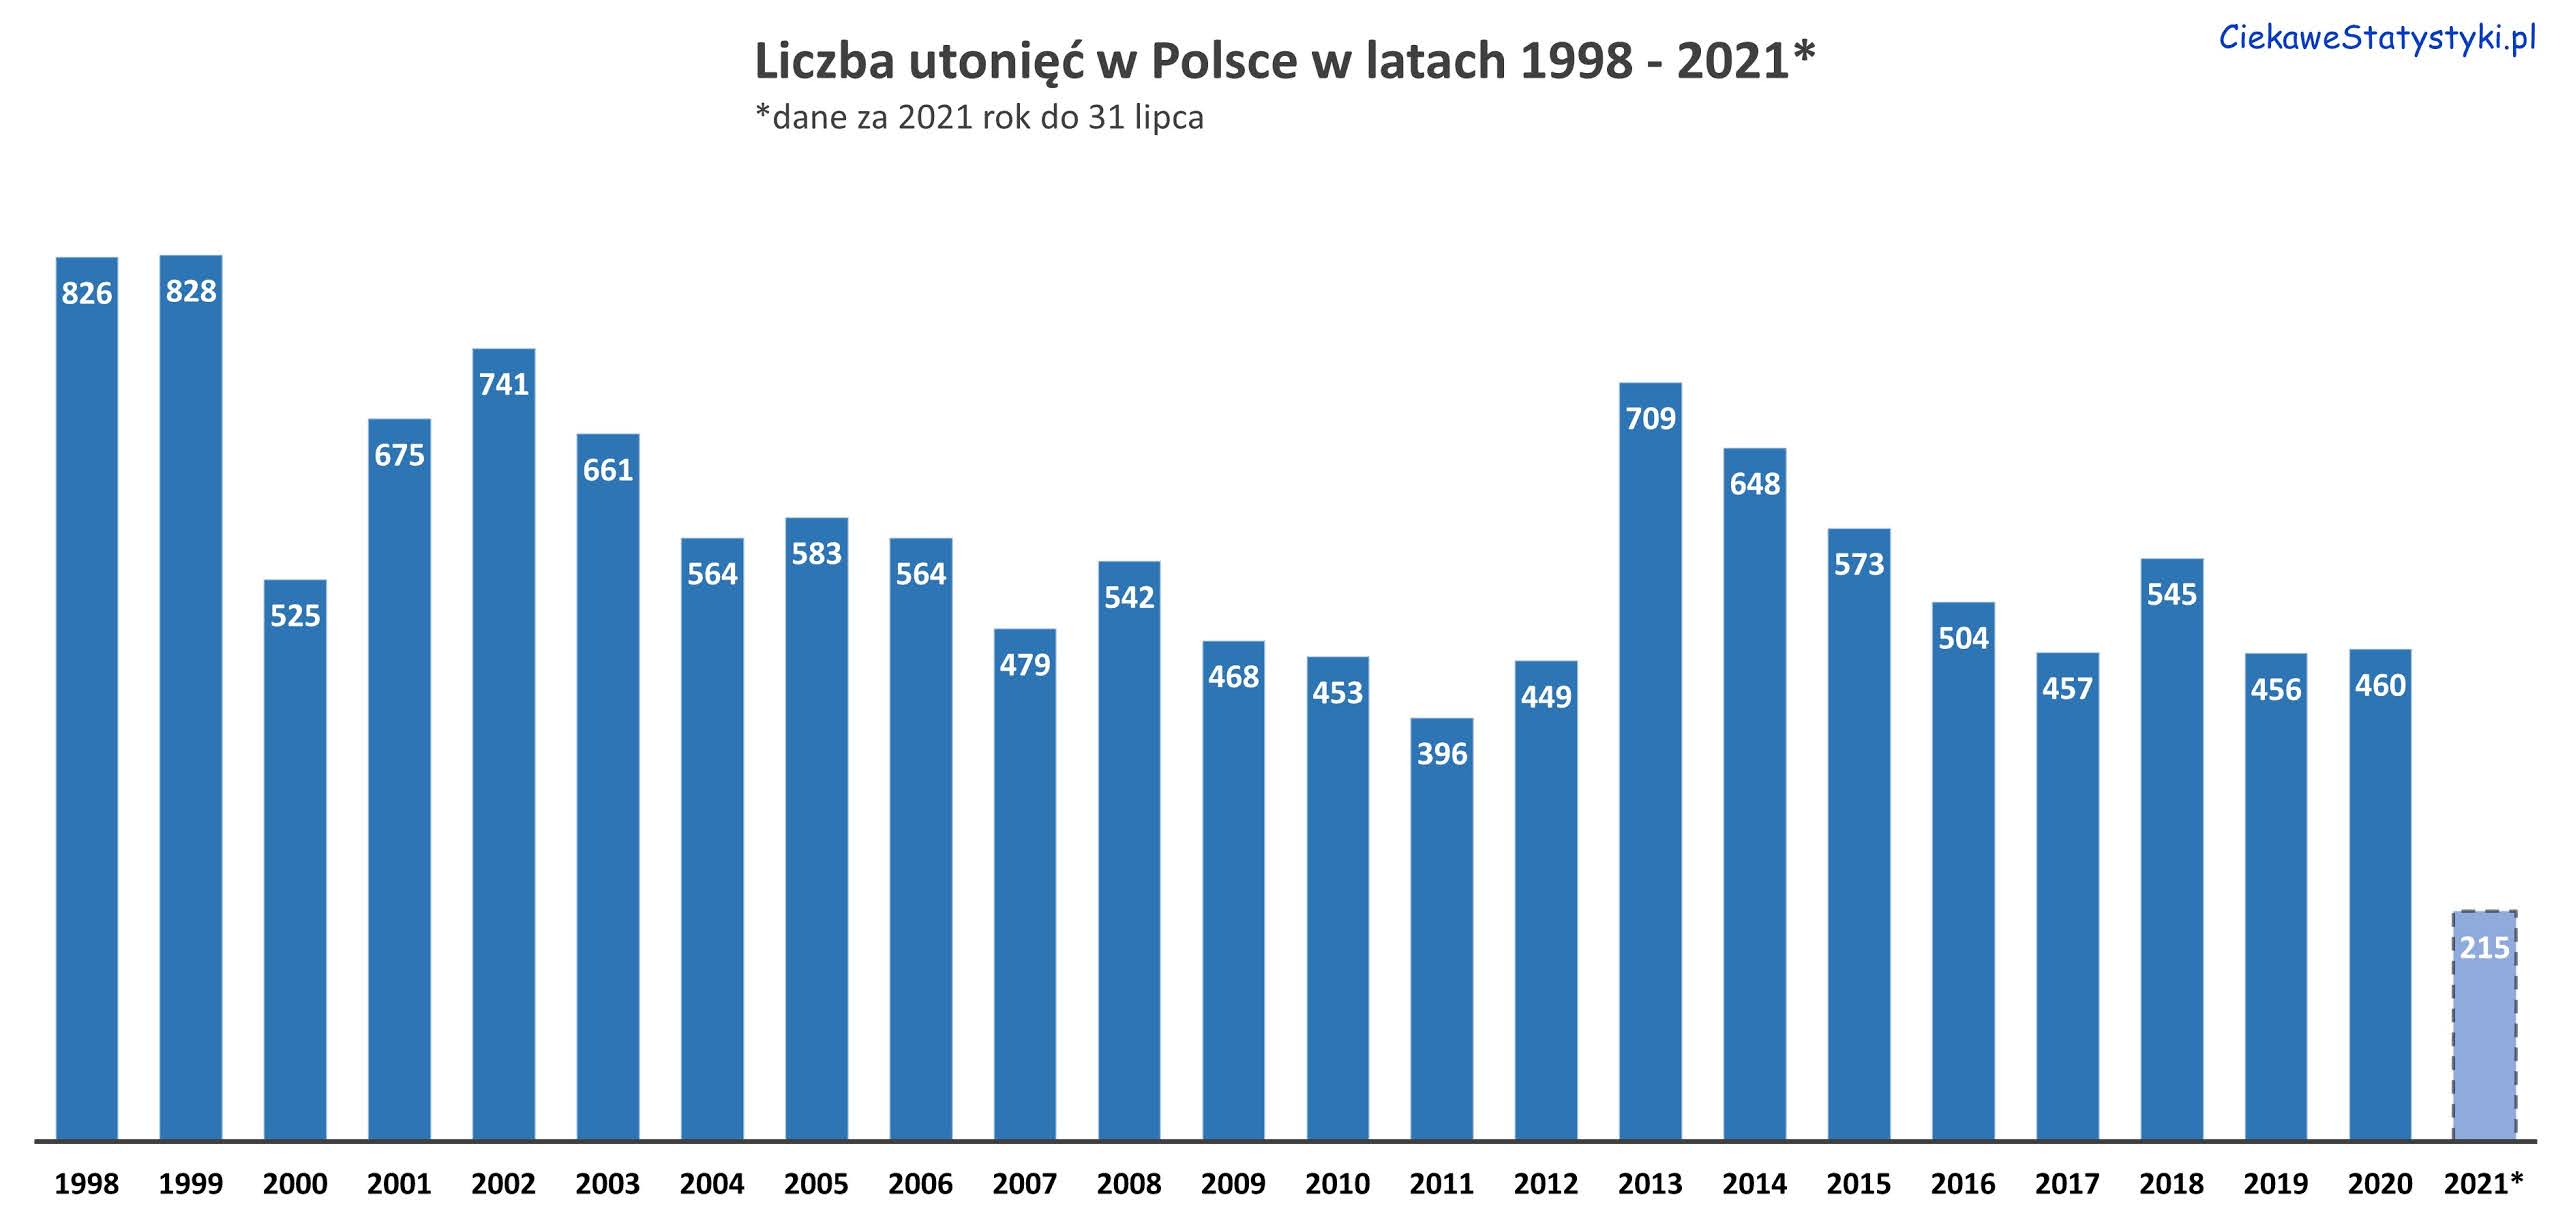 Statystyki utonięć w Polsce w latach 1998 - 2021. Ile osób utonęło w Polsce